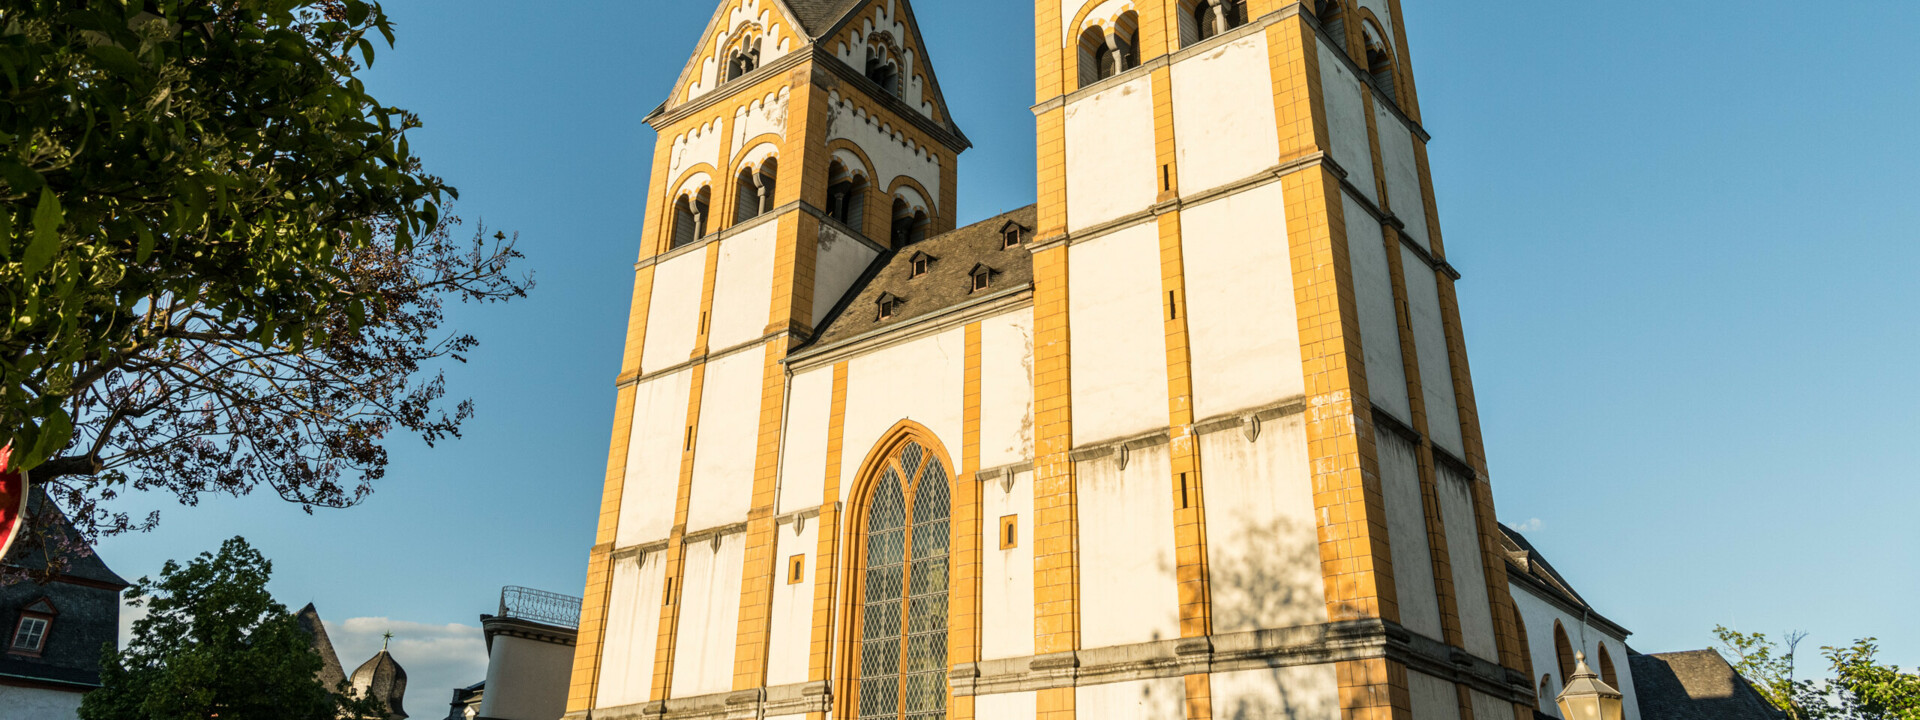 Die Florinskirche in Koblenz bei blauem Himmel ©Koblenz-Touristik GmbH